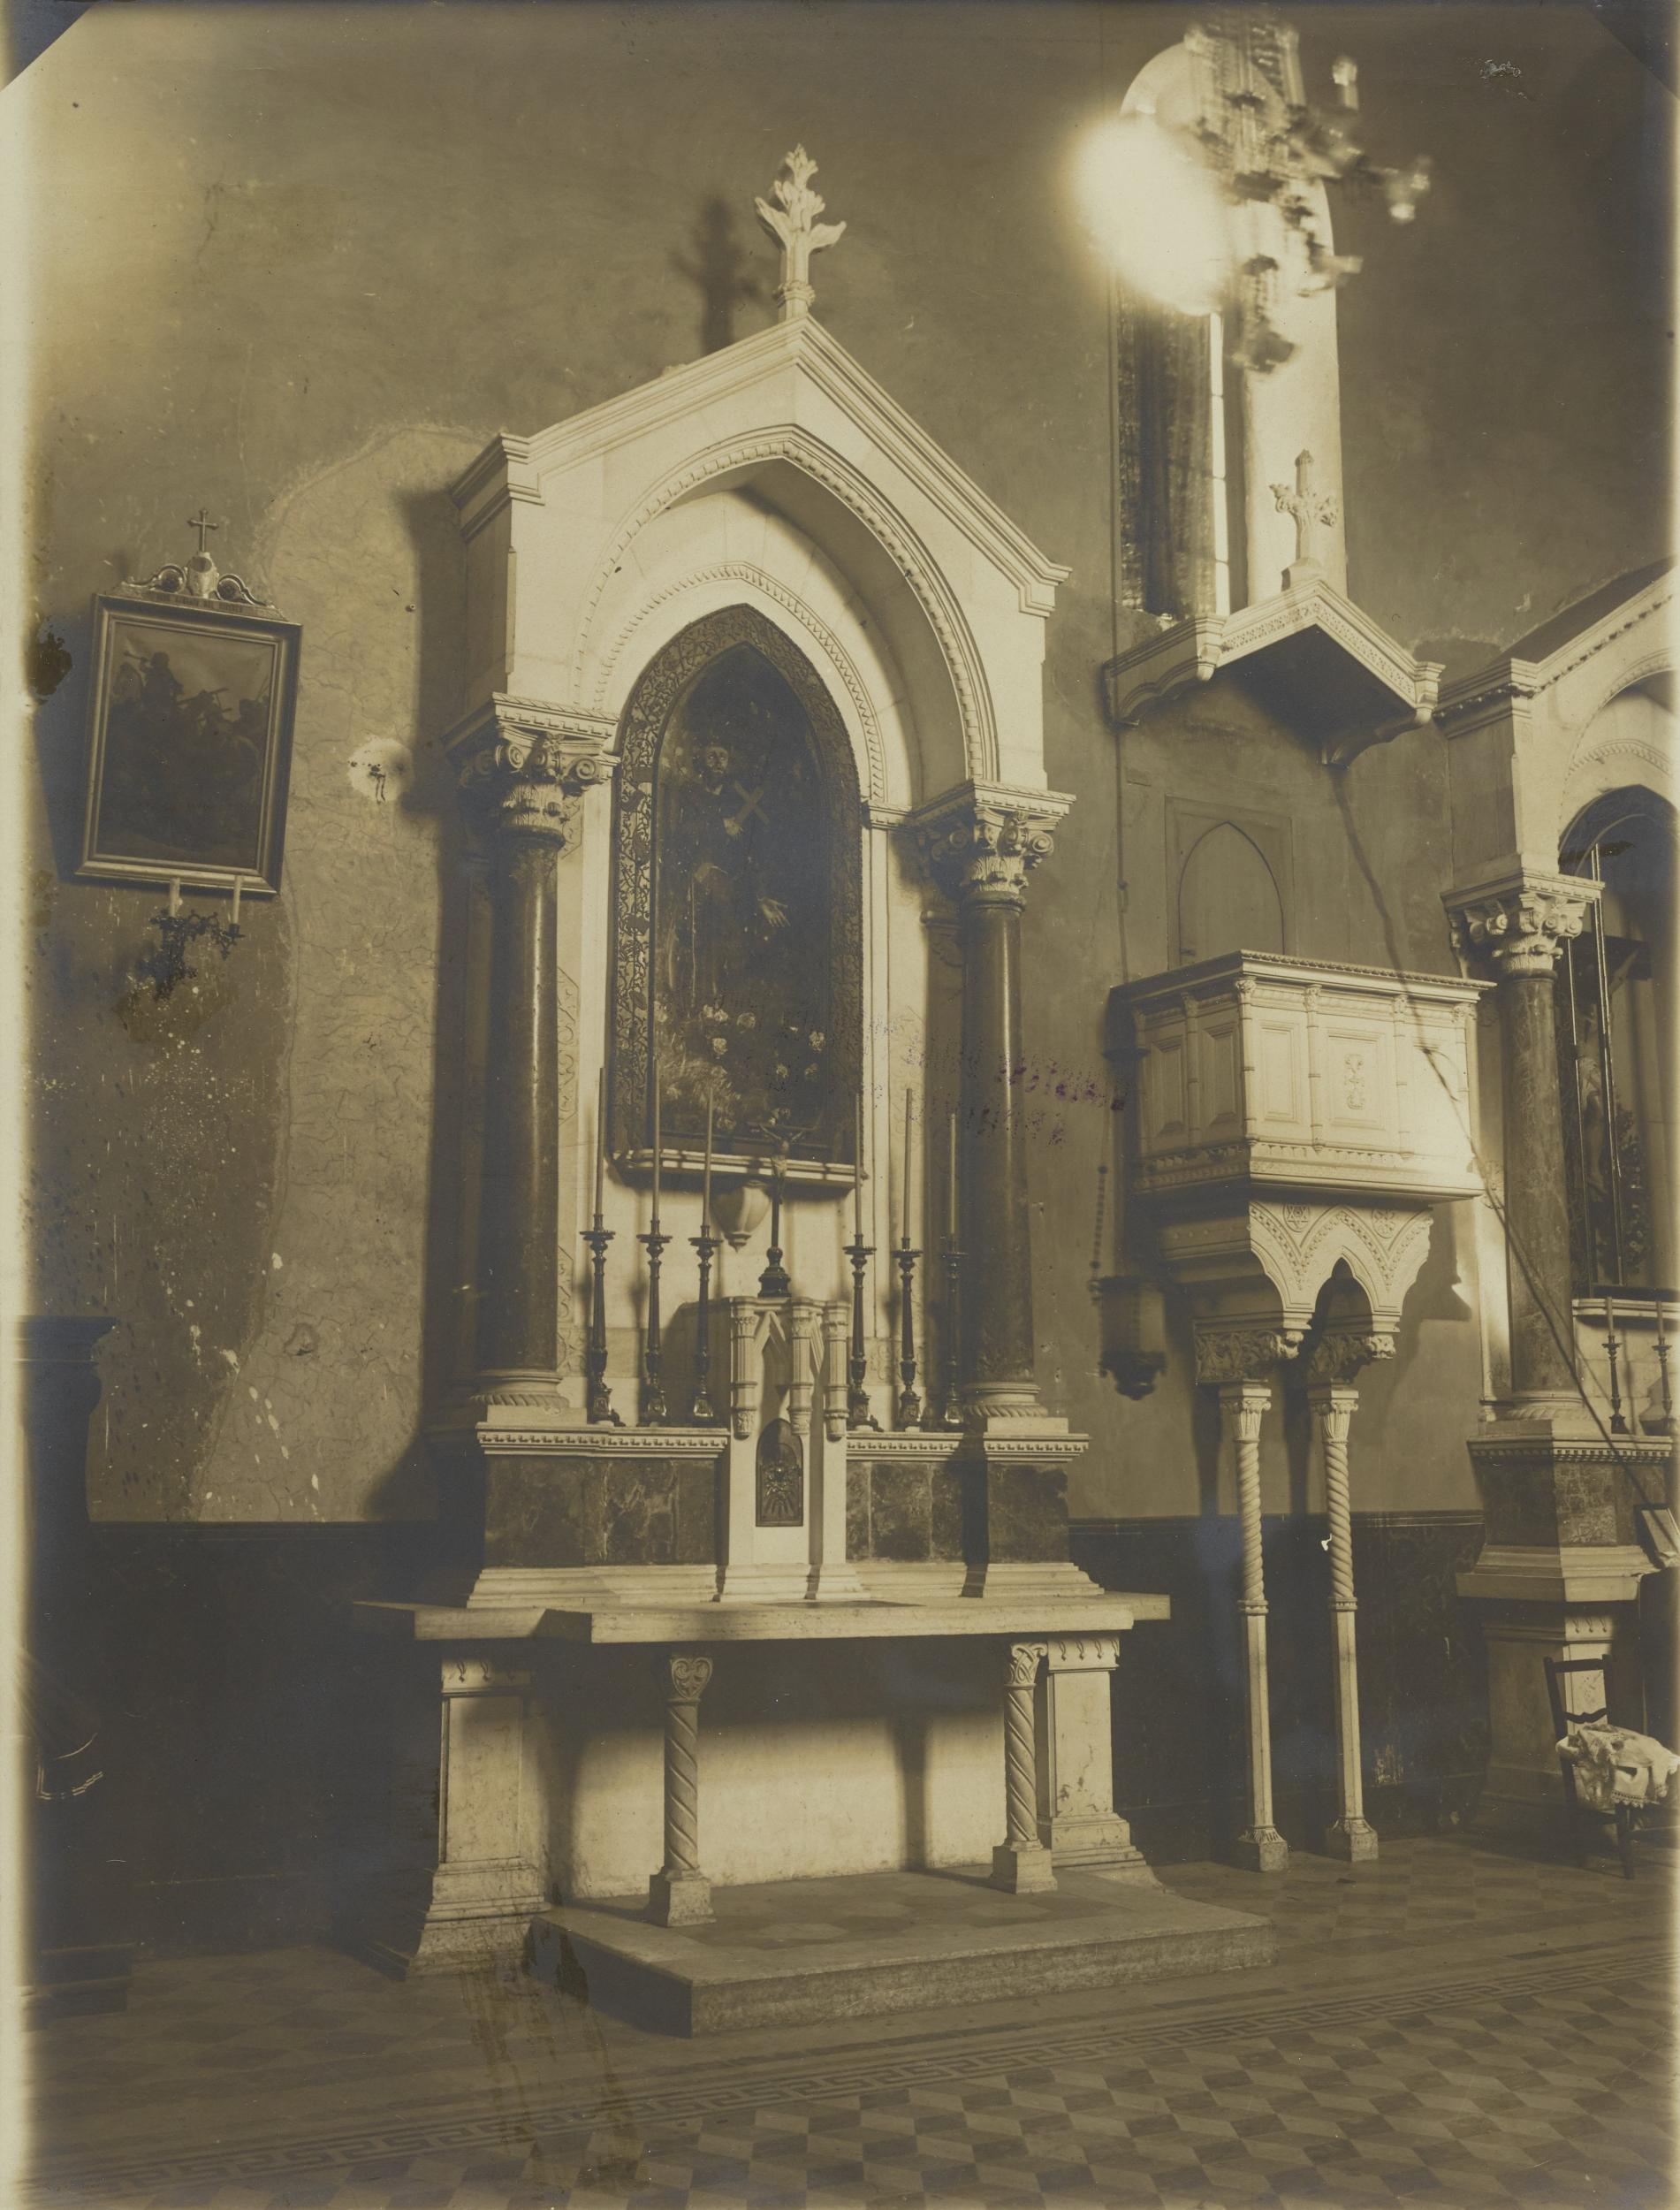 Fotografo non identificato, Bitonto - Chiesa di S. Leo, altare laterale e pulpito, 1894 post, gelatina ai sali d'argento/carta, MPI137905